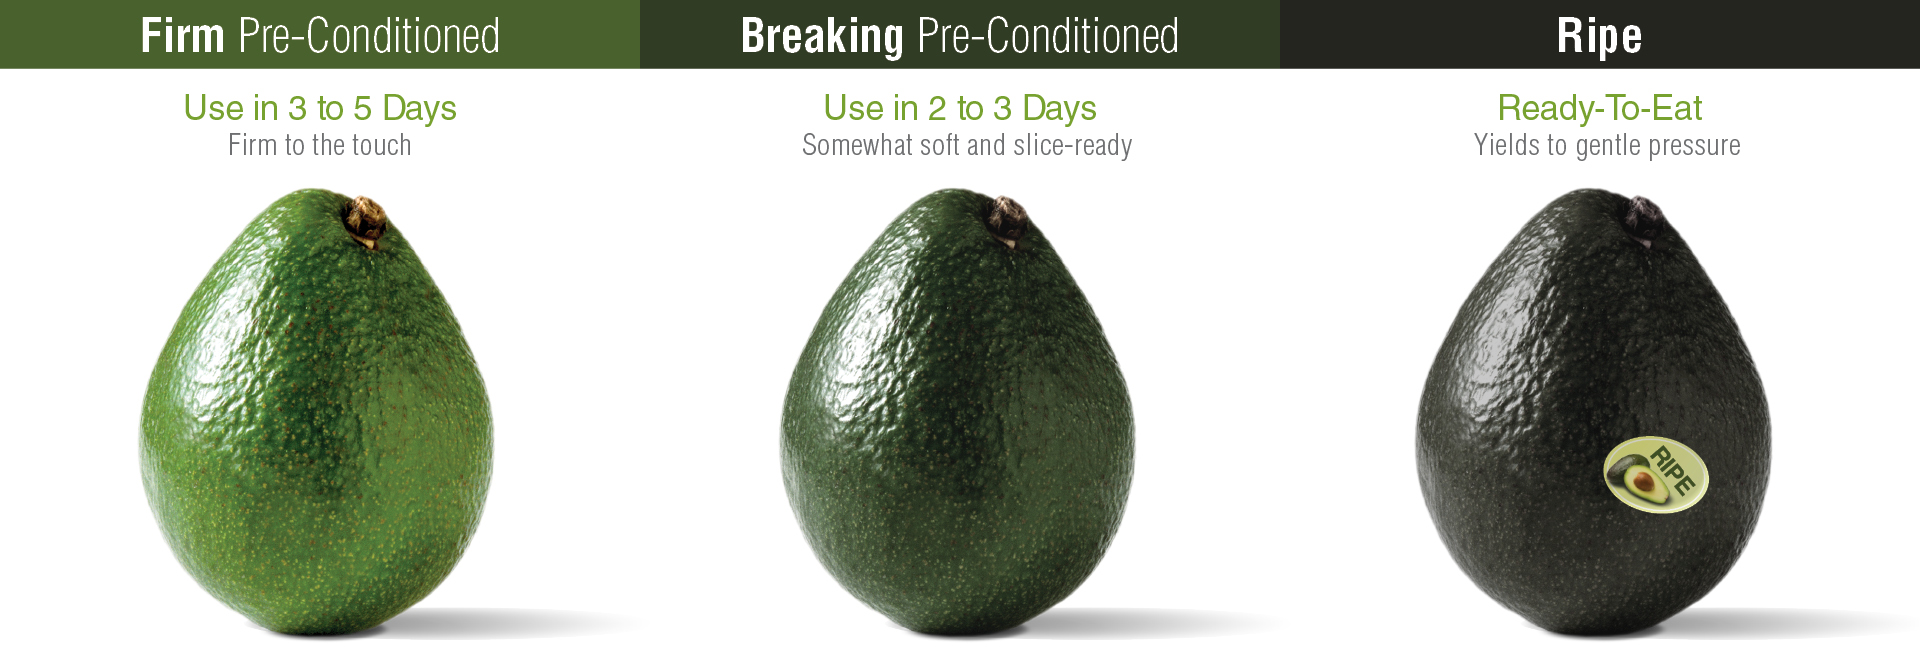 freshpoint produce 101 avocado ripening 